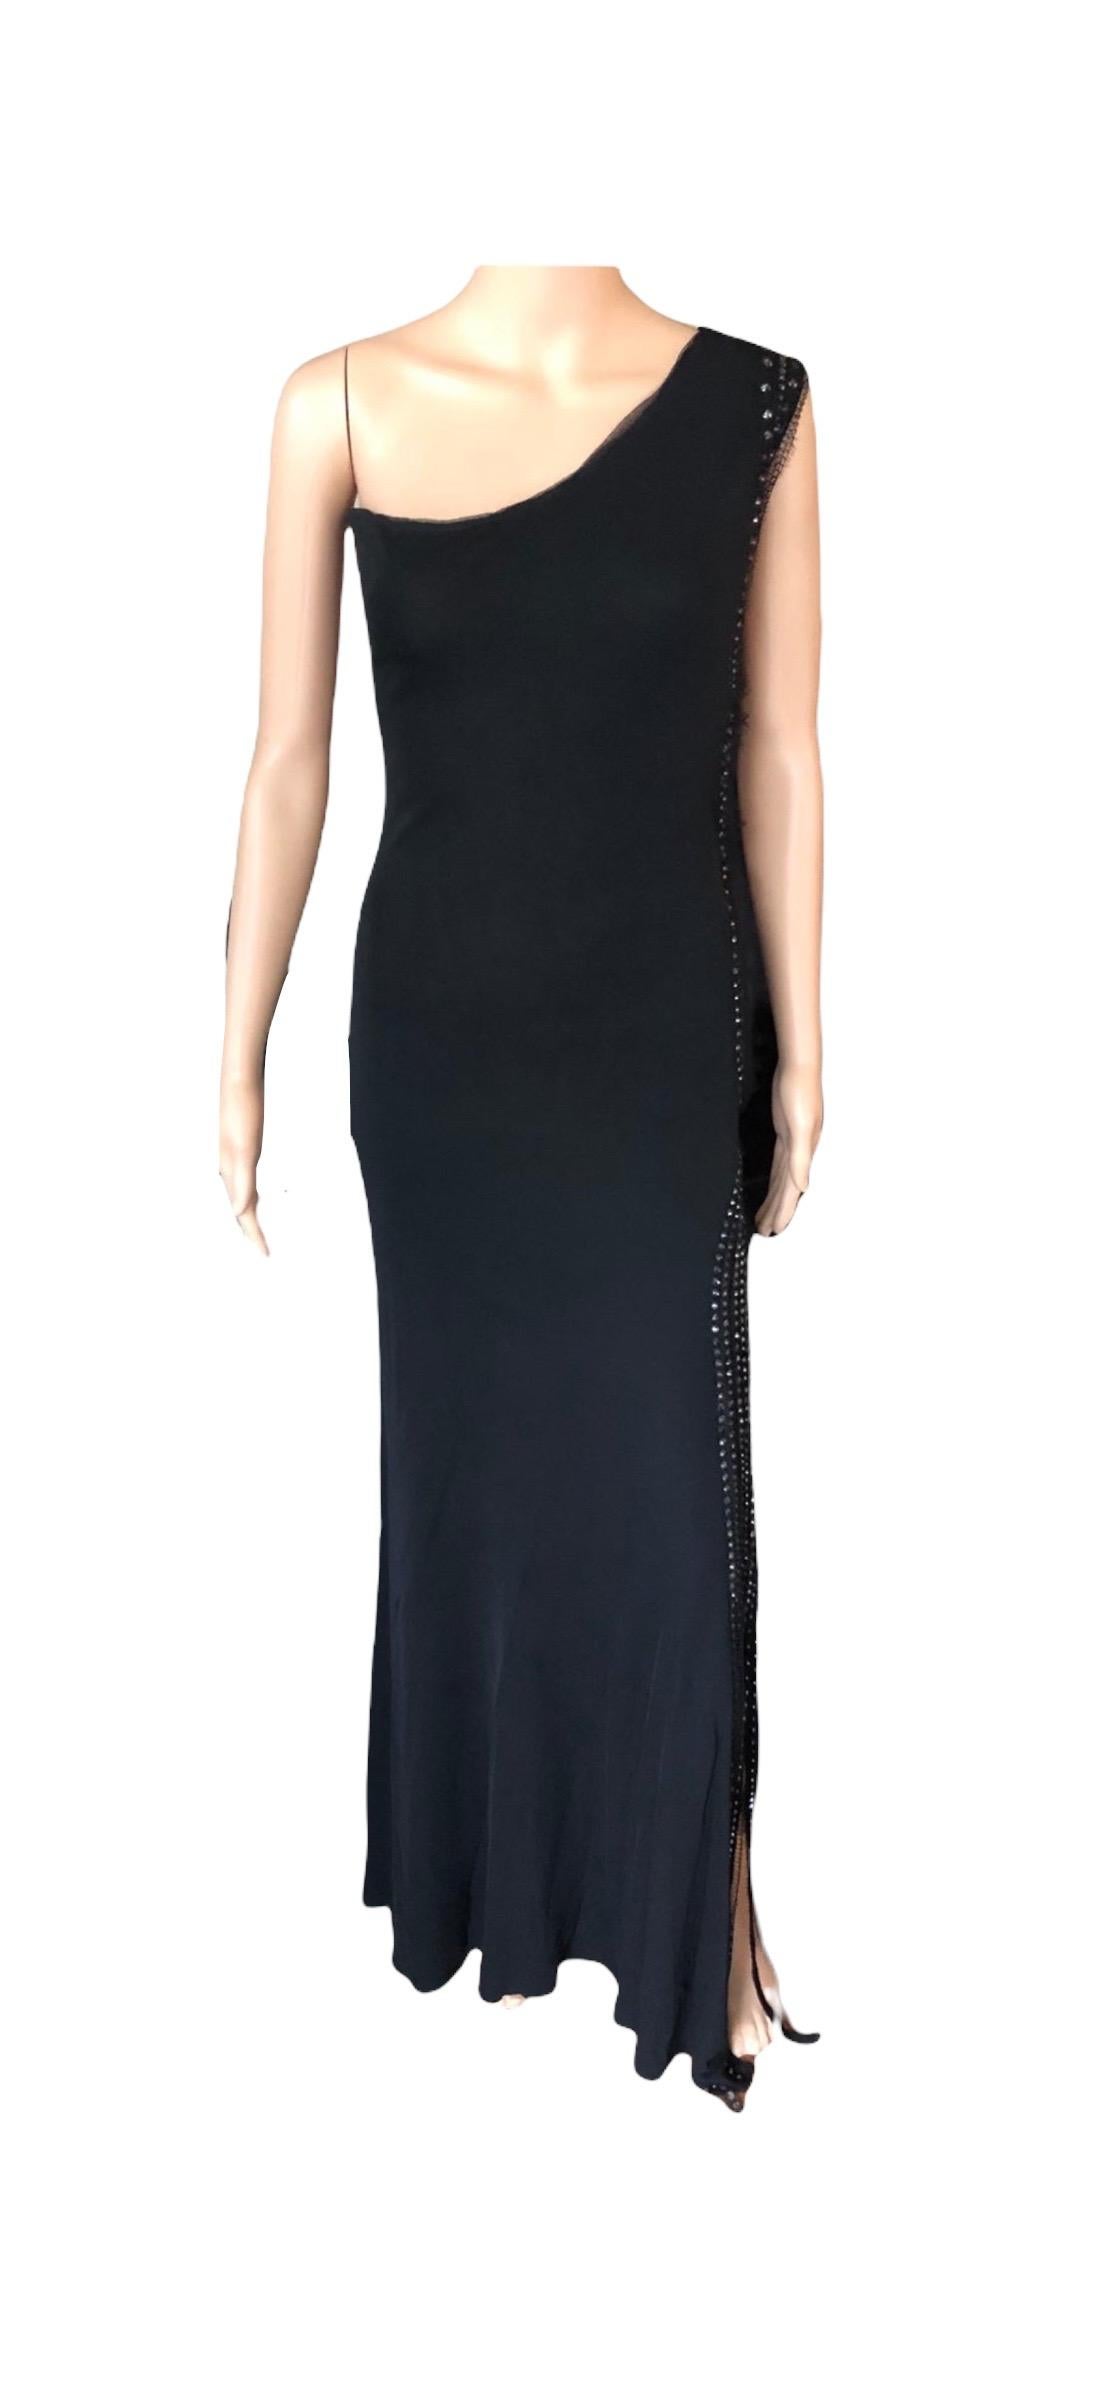 Jean Paul Gaultier Vintage Embellished One Shoulder Black Evening Dress Gown For Sale 3